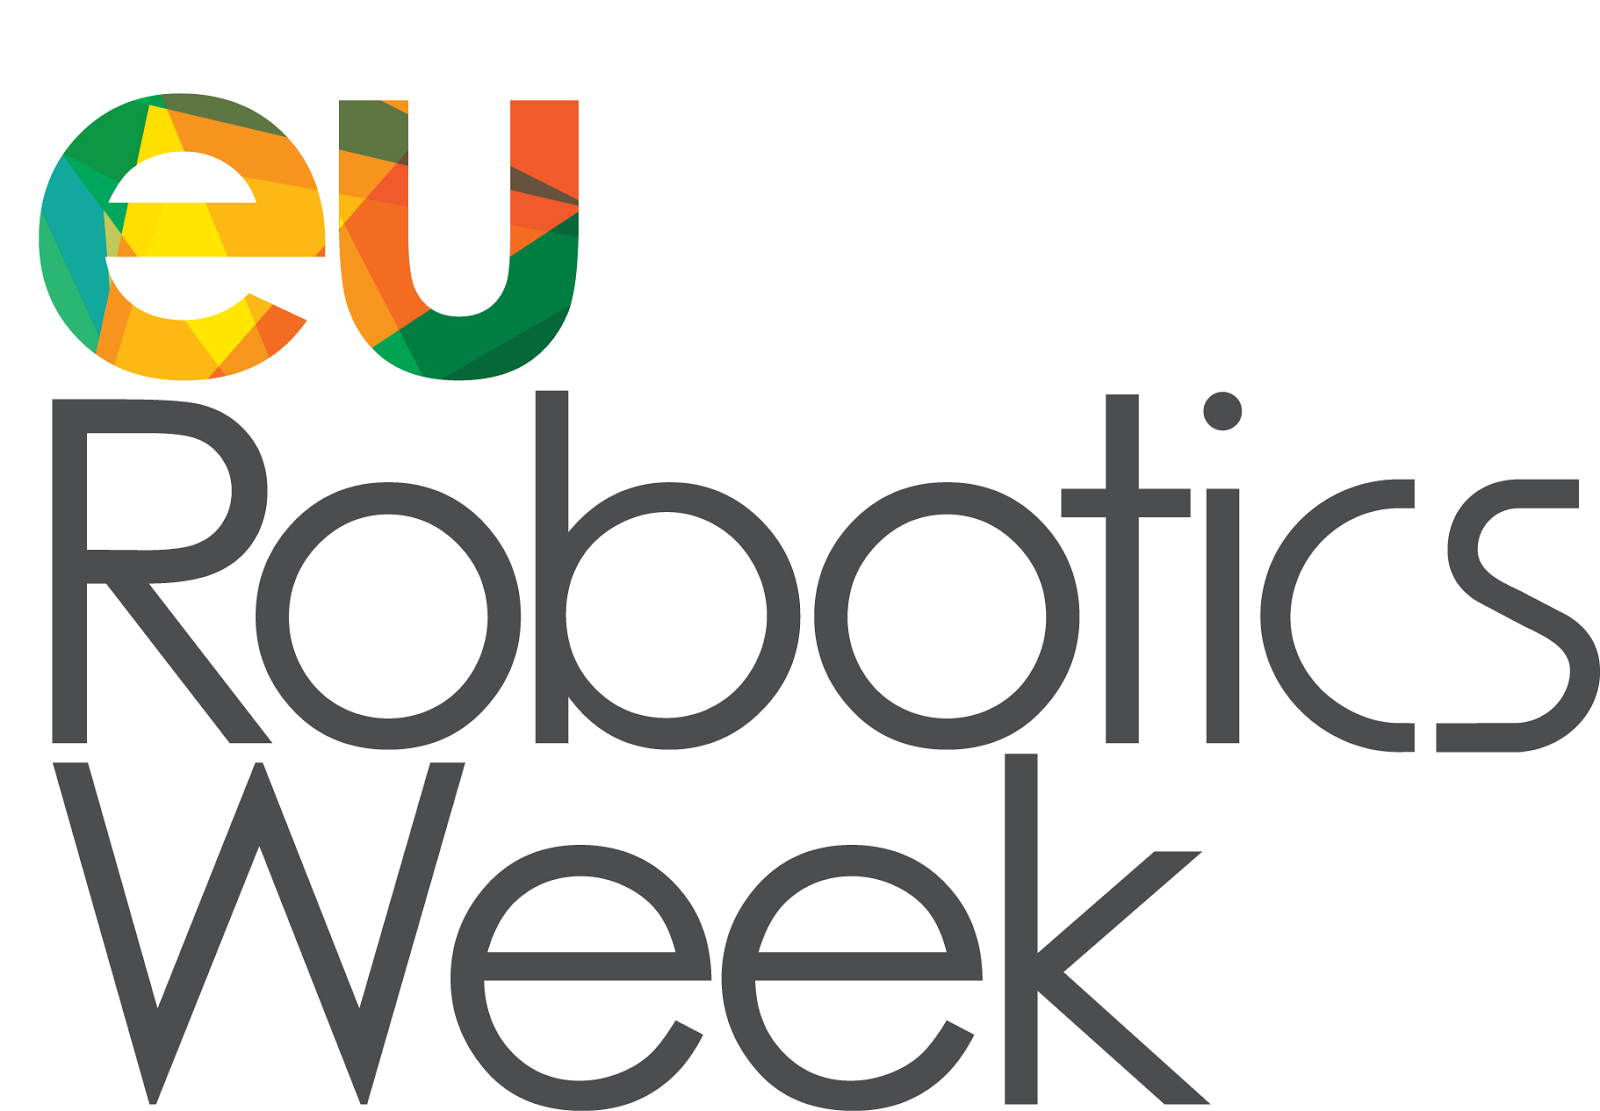 Semana Europea de la robótica 13